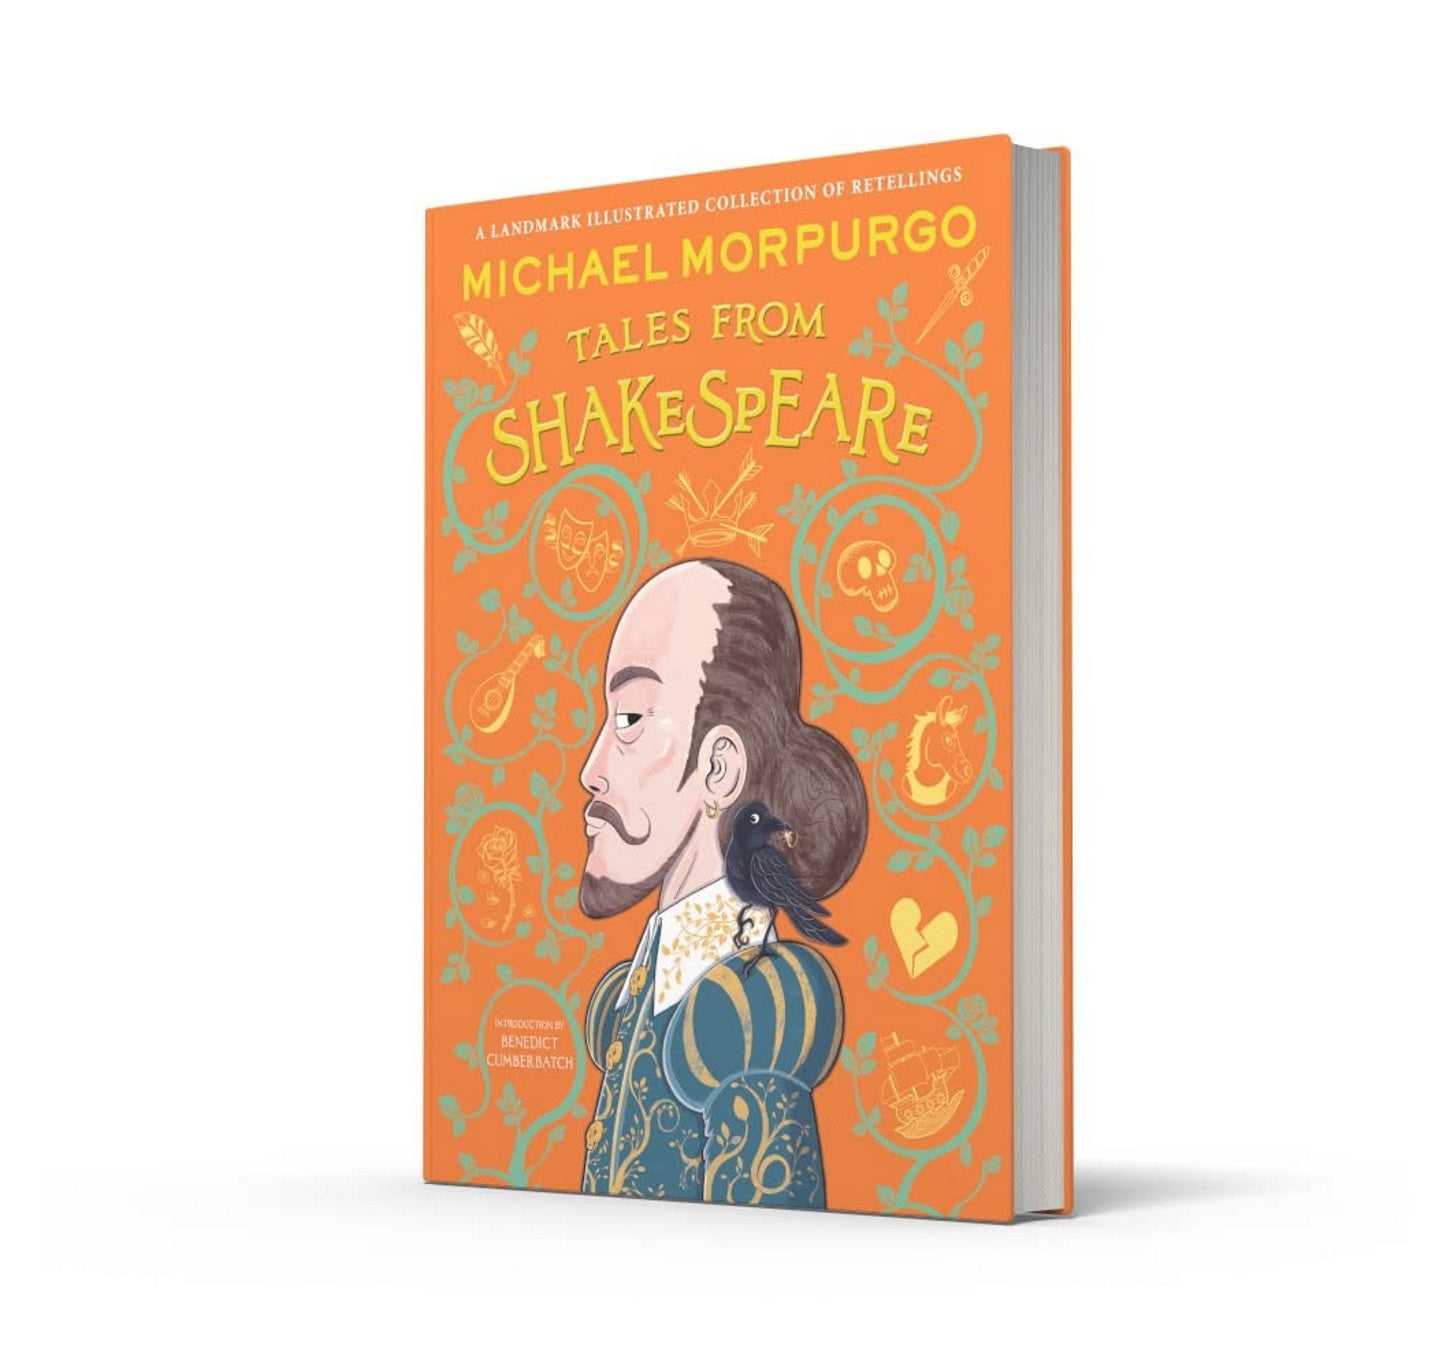 Michael Morpurgo’s Tales from Shakespeare HB